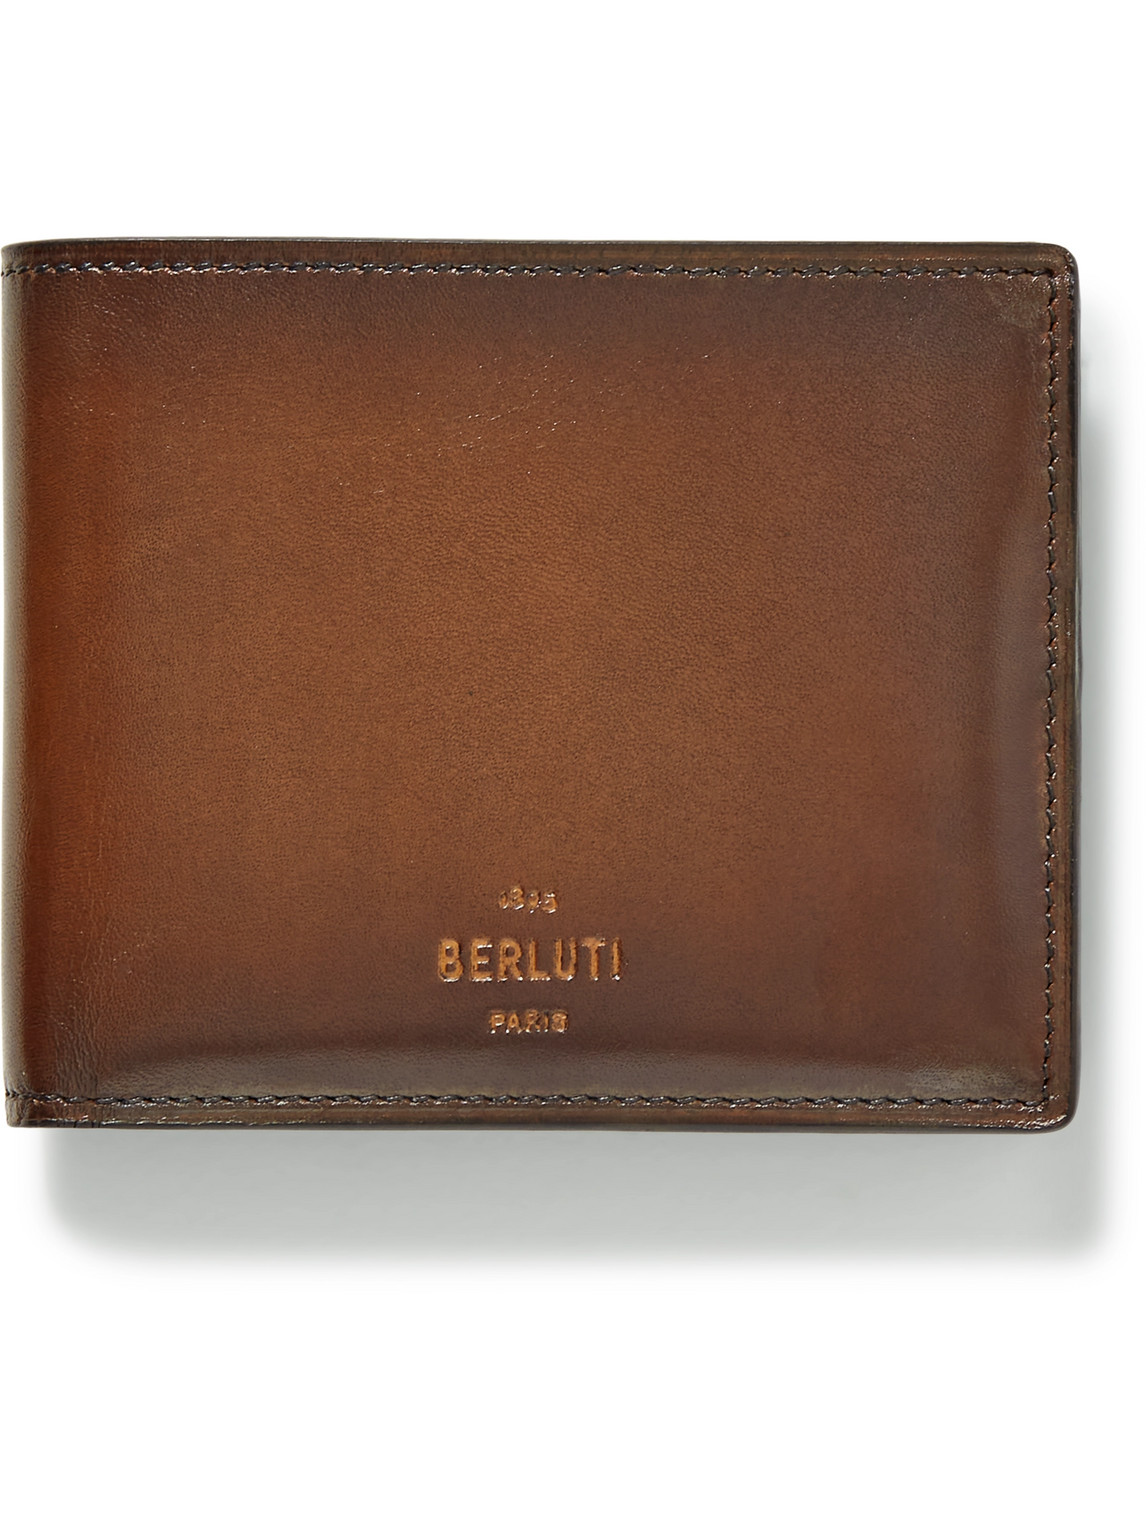 Berluti Venezia Leather Billfold Wallet In Brown